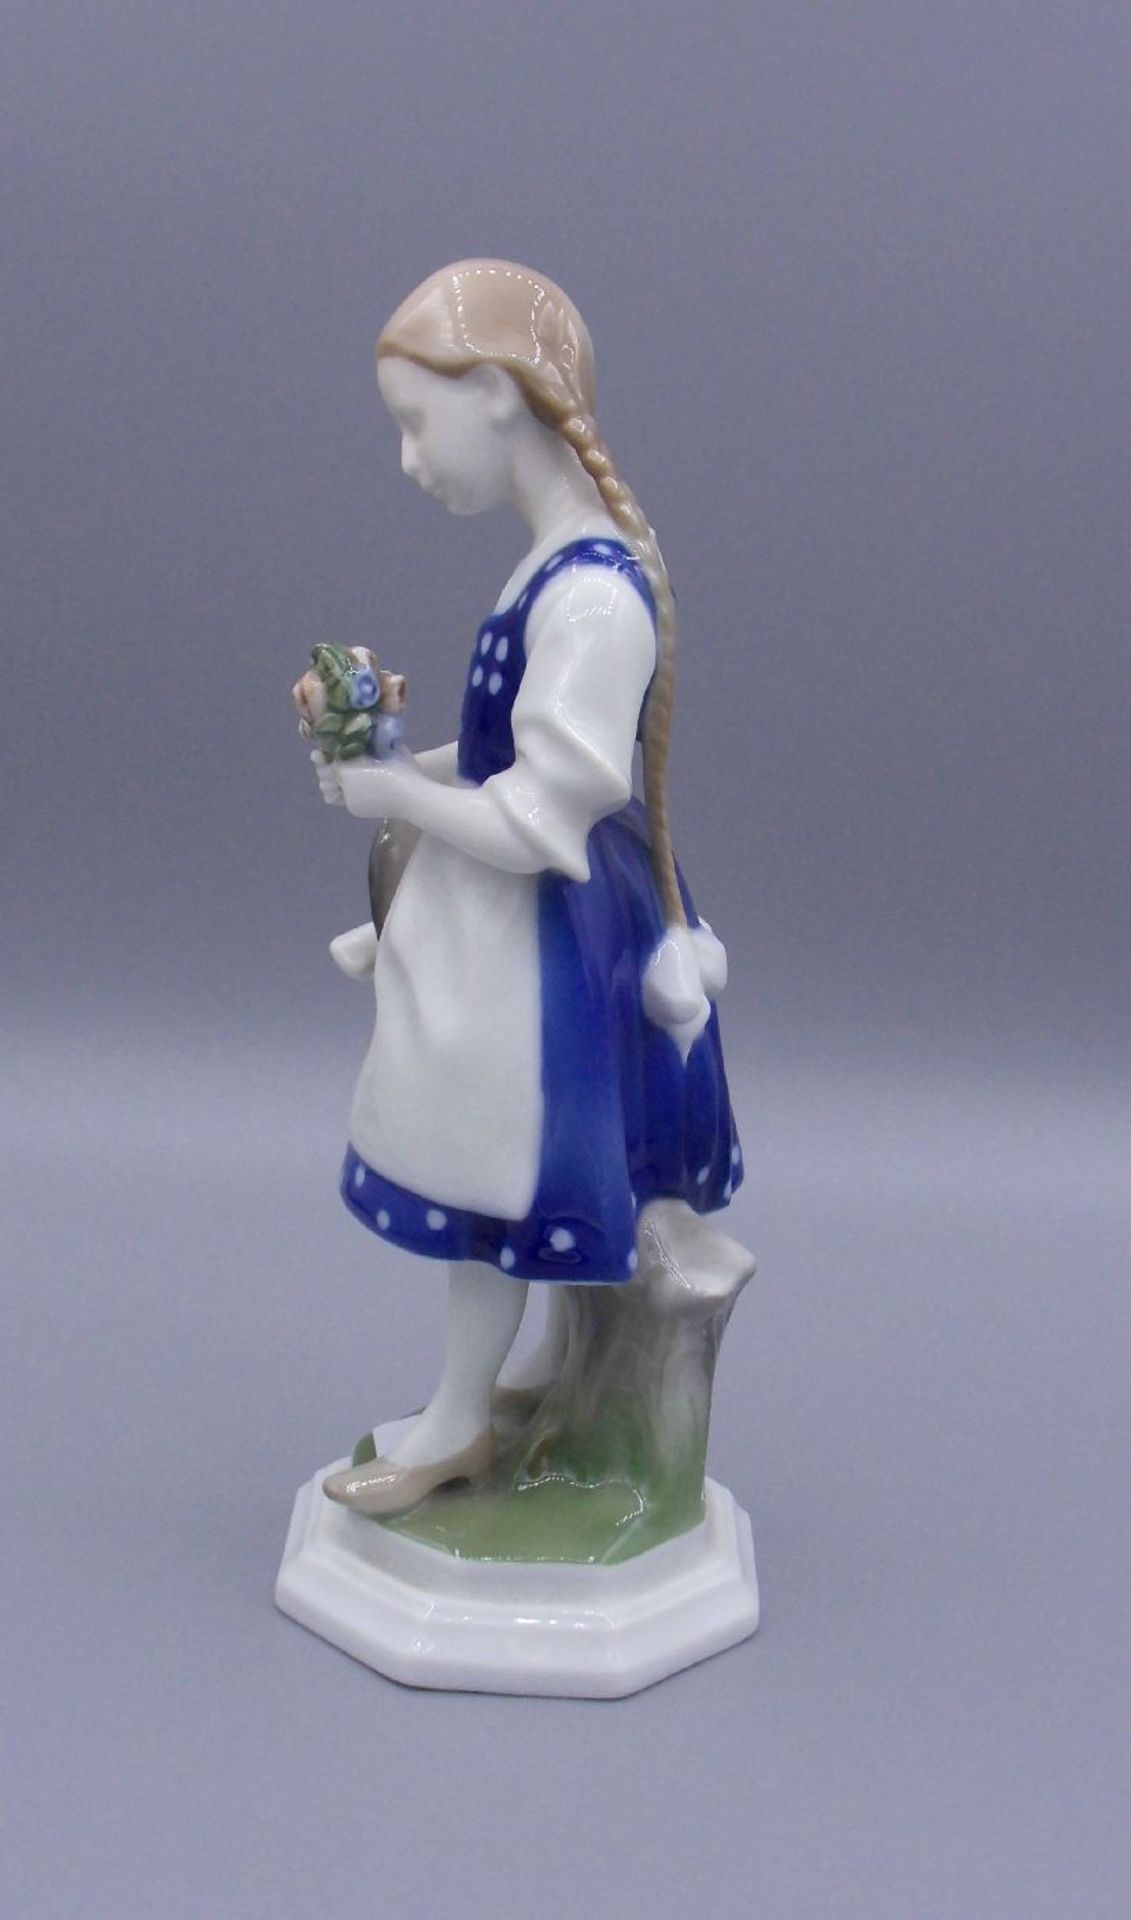 PORZELLANFIGUR "Tiroler Mädchen" / porcelain sculpture of a tyrolean girl, Manufaktur Rosenthal, - Bild 2 aus 6